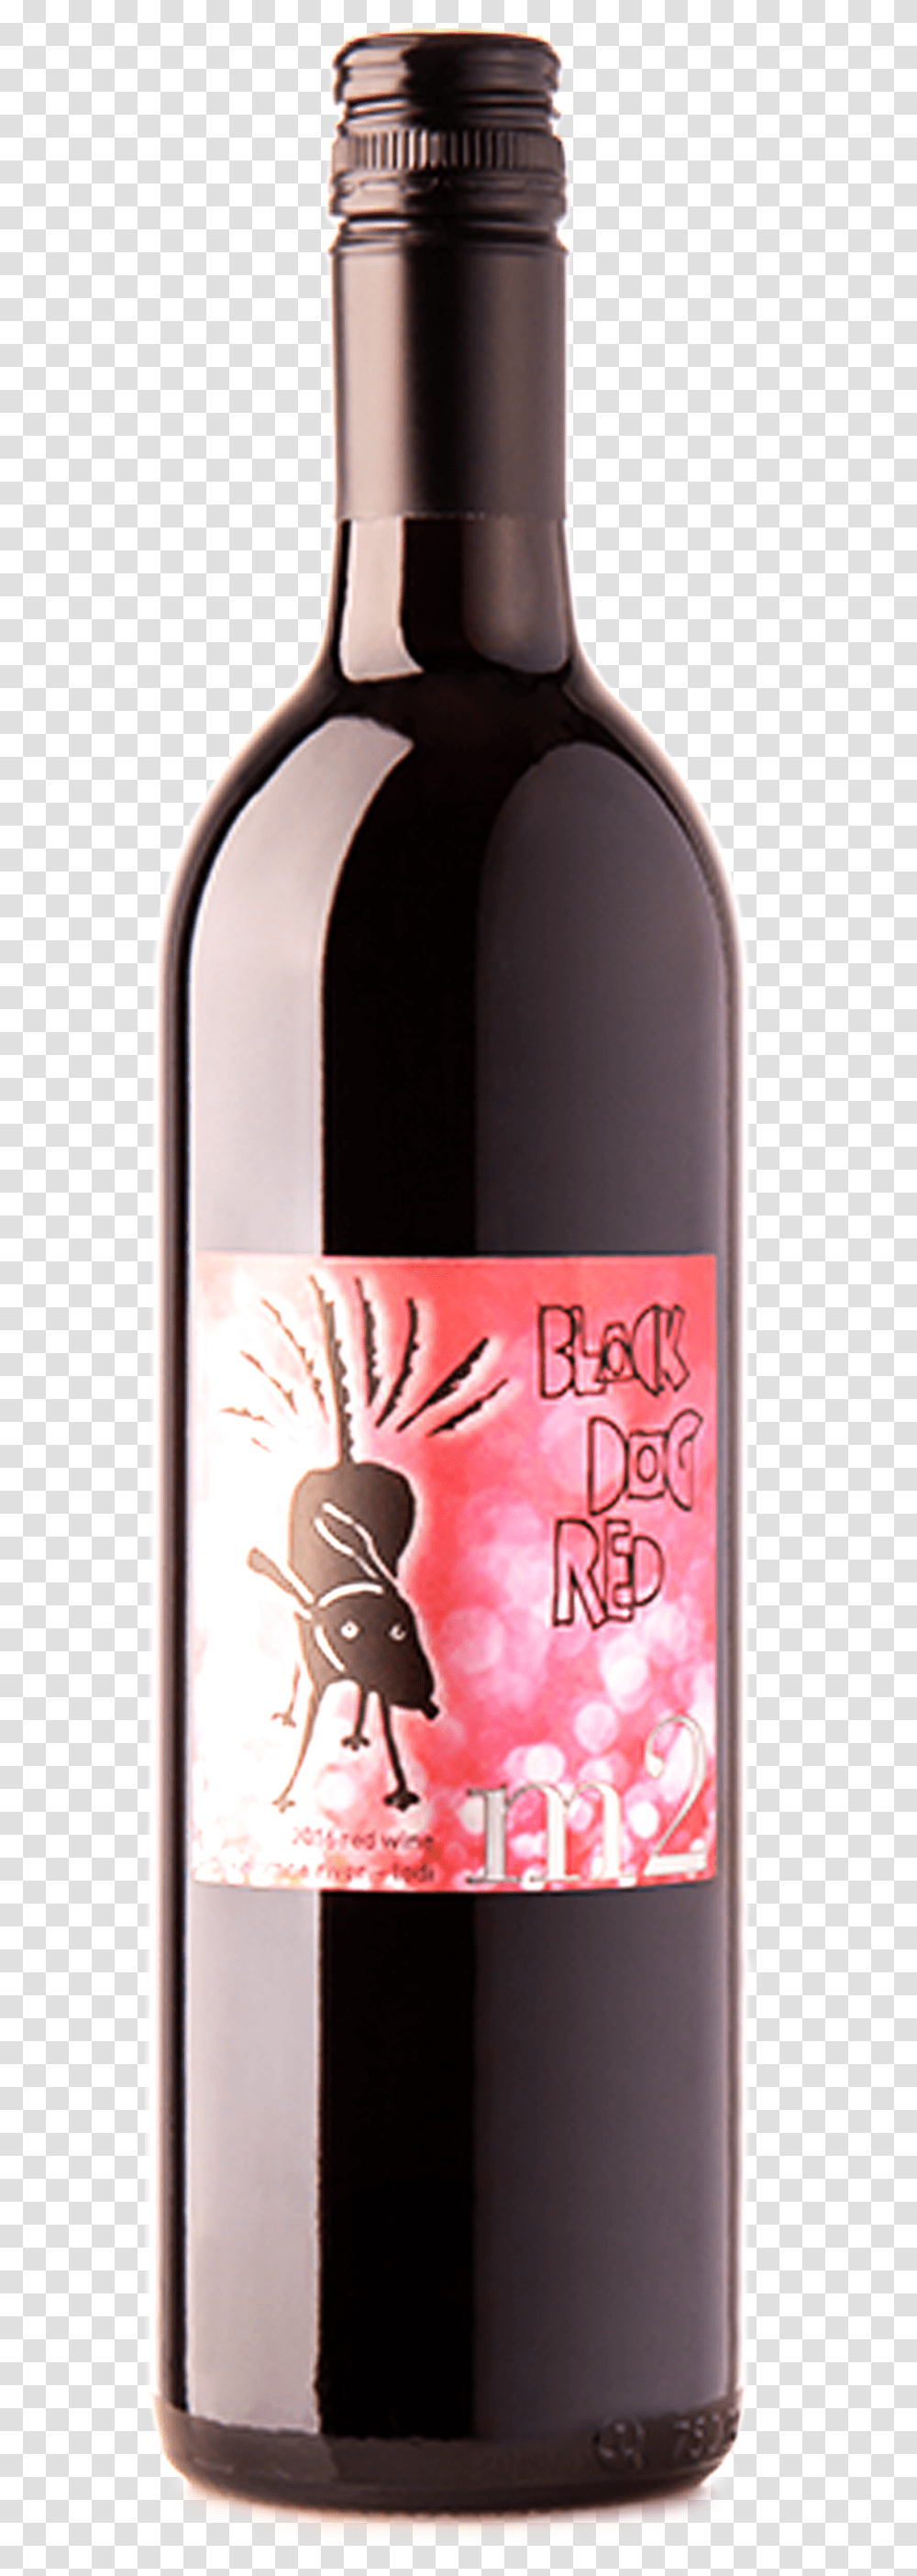 2016 Black Dog Red Glass Bottle, Alcohol, Beverage, Drink, Sake Transparent Png